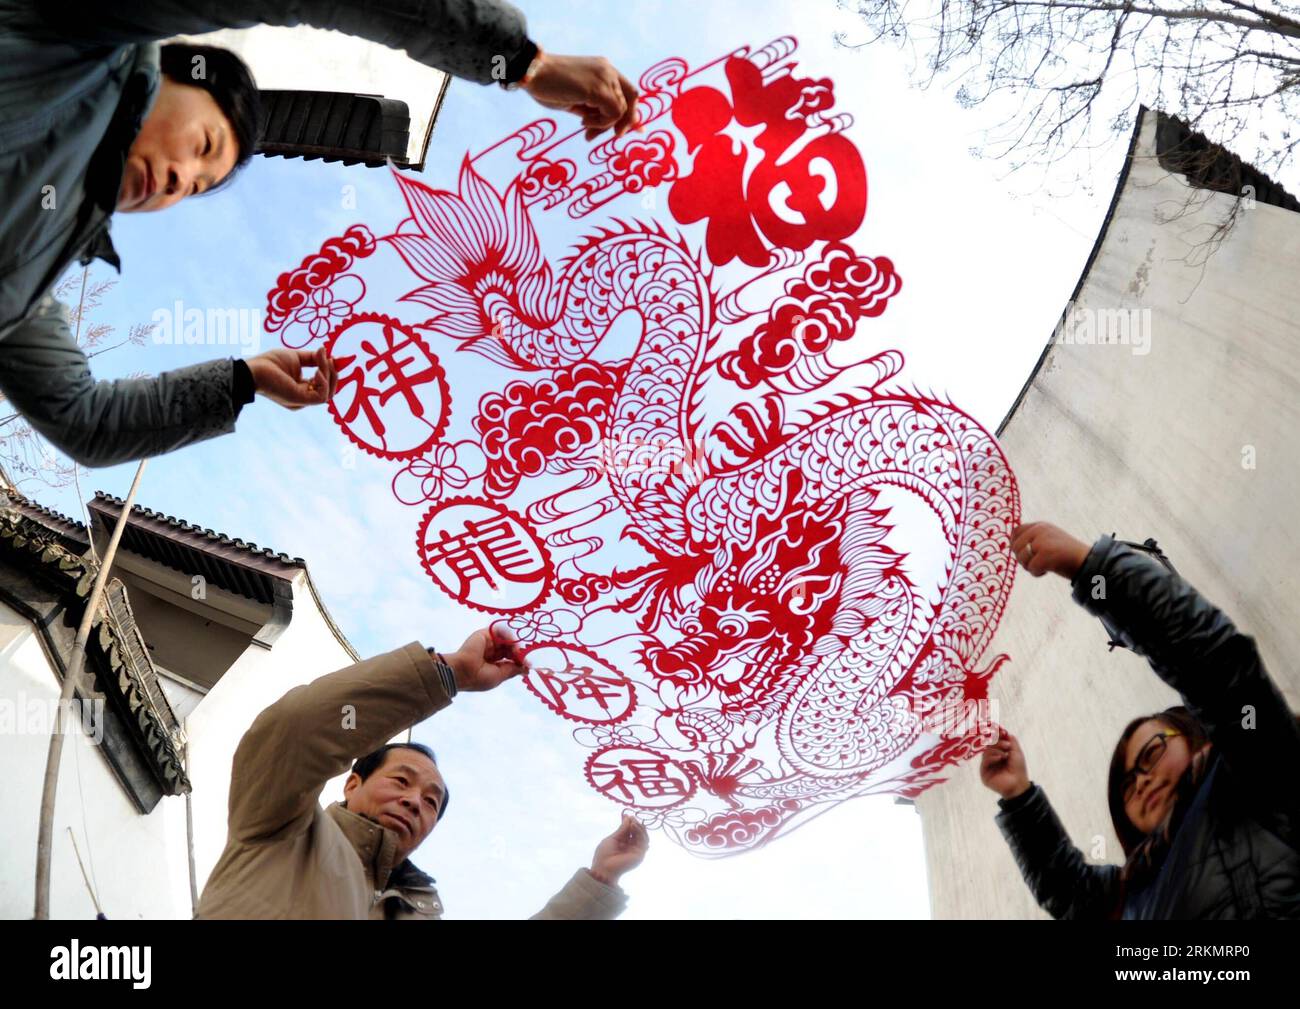 Bildnummer : 56802767 Datum : 02.01.2012 Copyright : imago/Xinhua (120103) -- SUZHOU, 3 janvier 2012 (Xinhua) -- Zheng Xianyun(C), un artiste de découpe de papier, montre son travail de bénédictions de dragon auspicieuses à Suzhou, dans la province de Jiangsu de l'est de la Chine, le 2 janvier 2012. L'ouvrage mesure 1,5 mètres de haut et 1 mètres de large. (Xinhua/Hang Xingwei) (wqc) CHINA-SUZHOU-CULTURE-PAPER-CUTTING (CN) PUBLICATIONxNOTxINxCHN Gesellschaft Kultur Tradition Kunst Papierschnitt Scherenschnitt xbs x0x 2012 quer 56802767 Date 02 01 2012 Copyright Imago XINHUA Suzhou Jan 3 2012 XINHUA Zheng Xianyun C a Paper Cutting Artist shows Banque D'Images